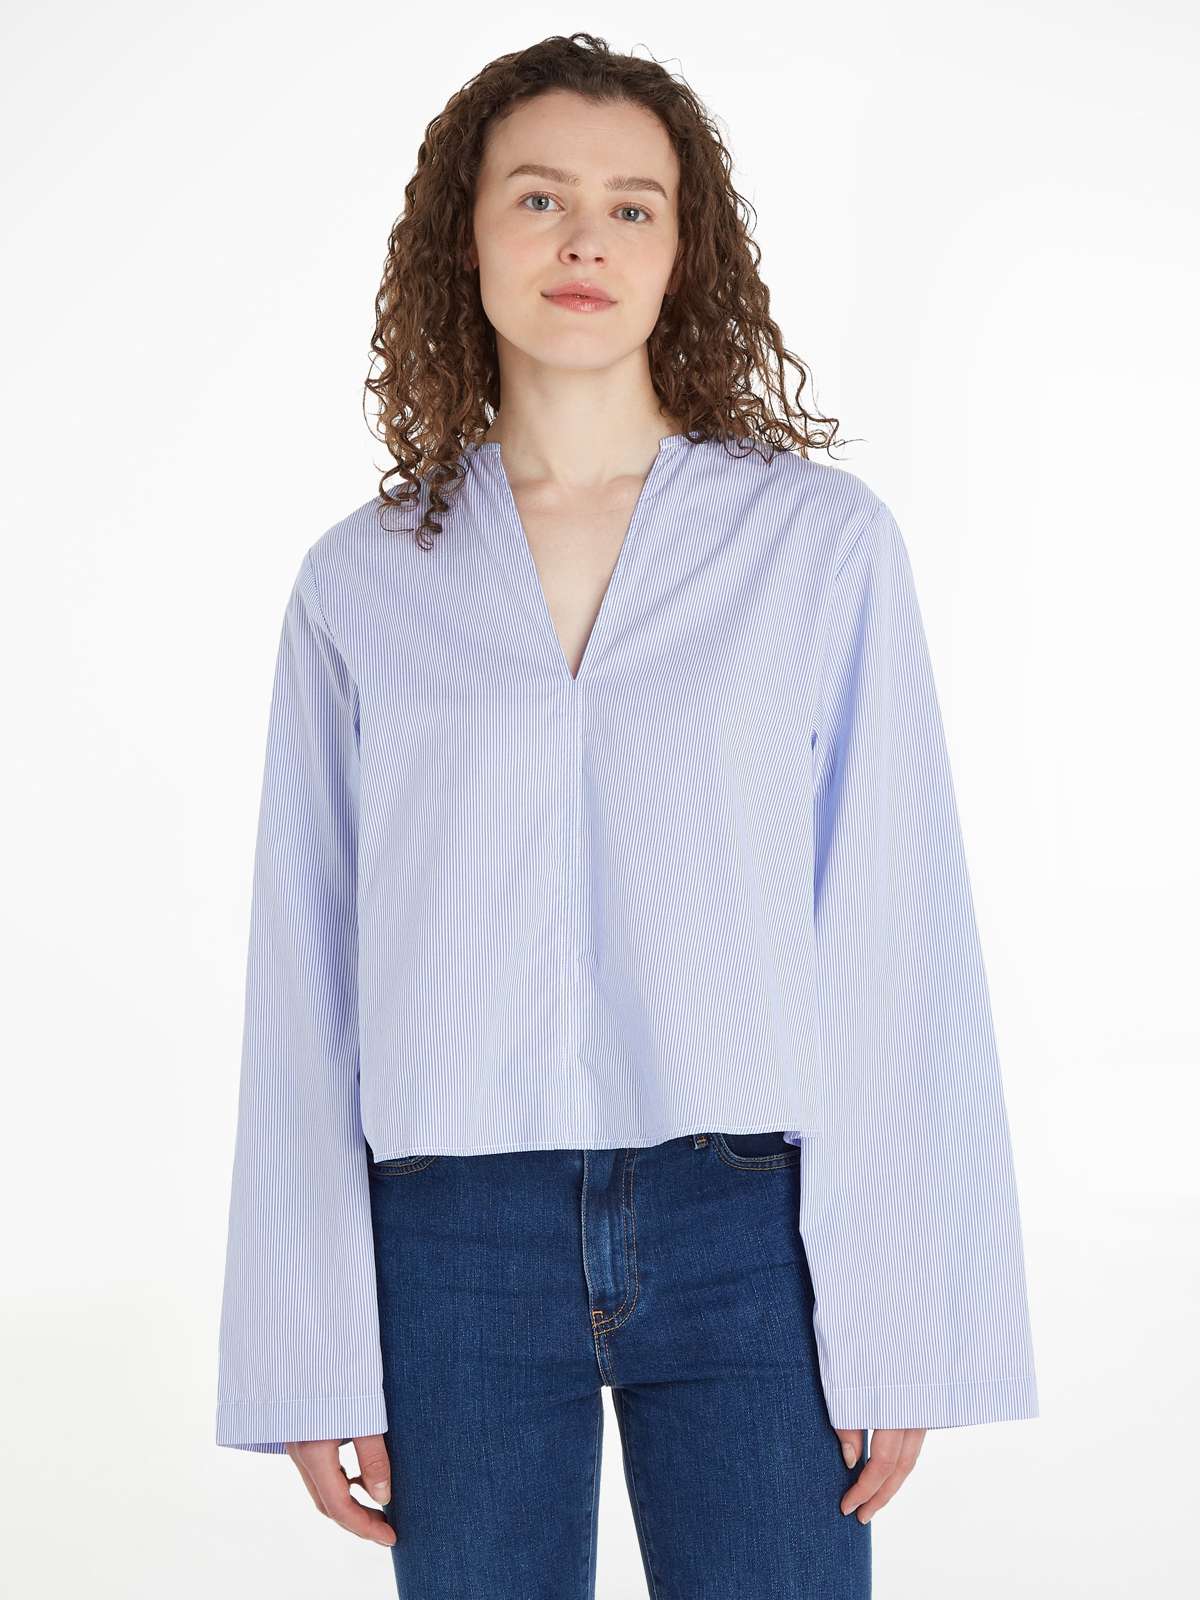 Блузка-рубашка с вышивкой логотипа